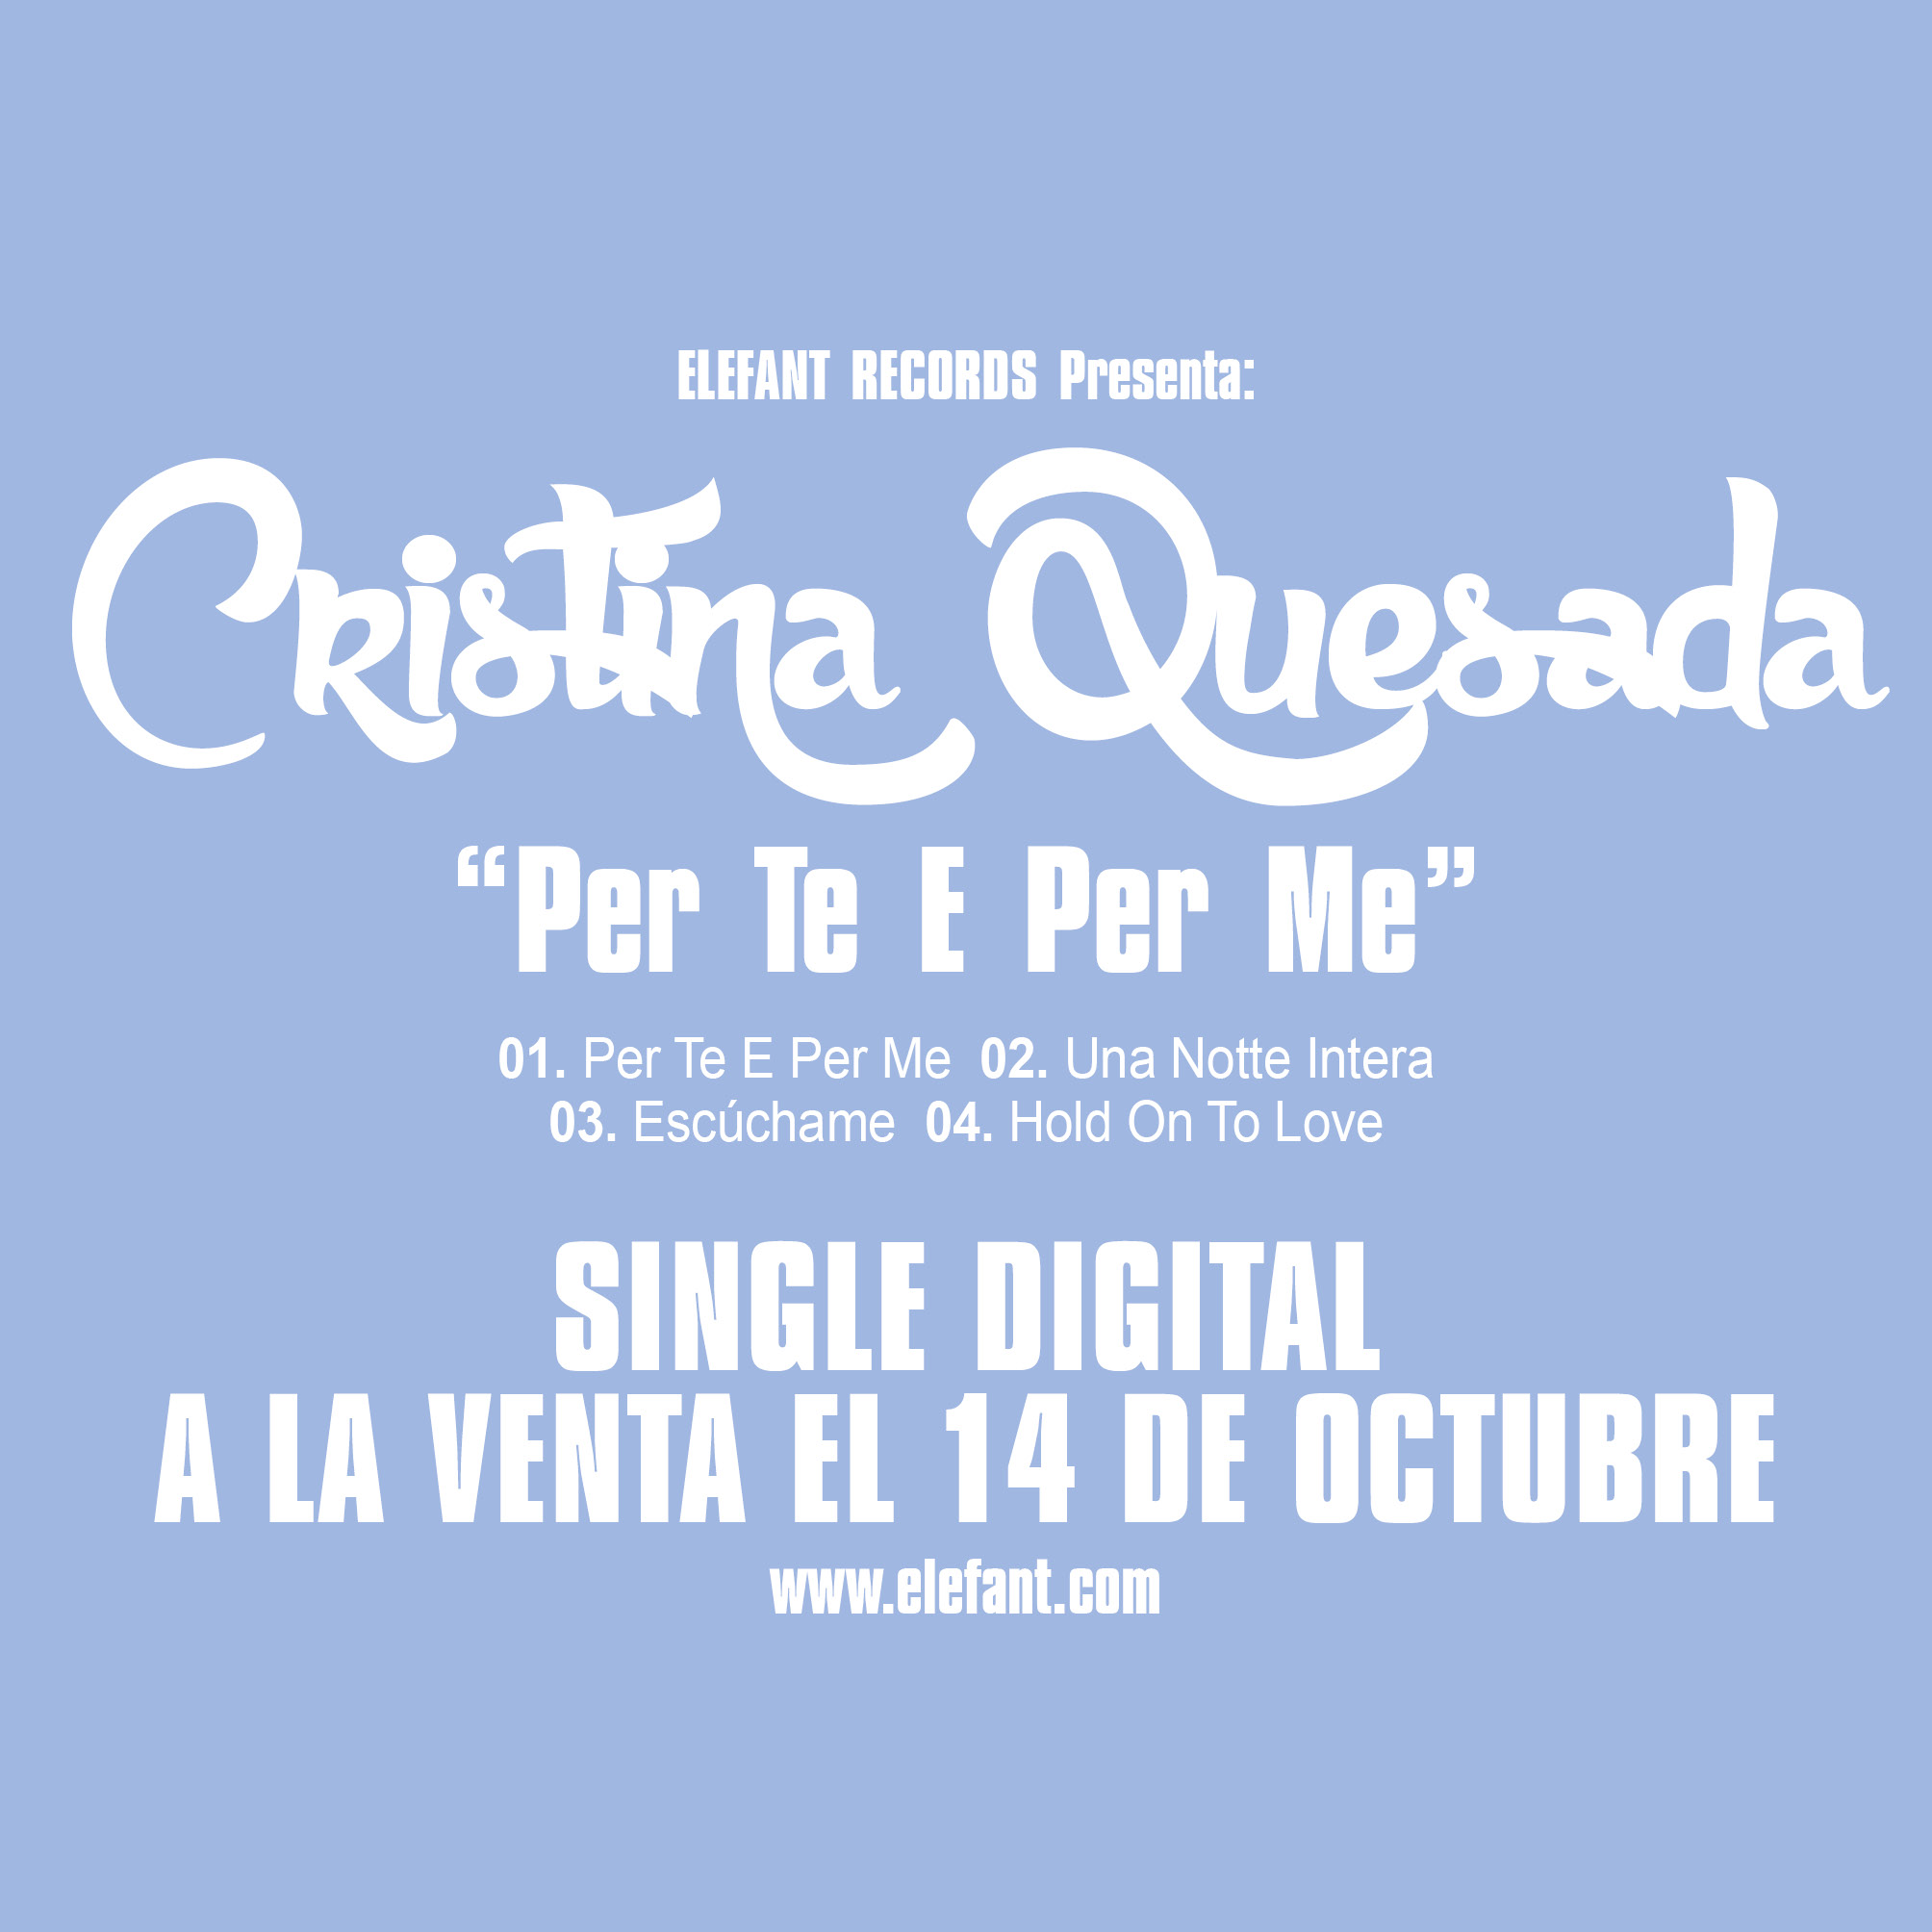 CRISTINA QUESADA "Per Te E Per Me" Single Digital